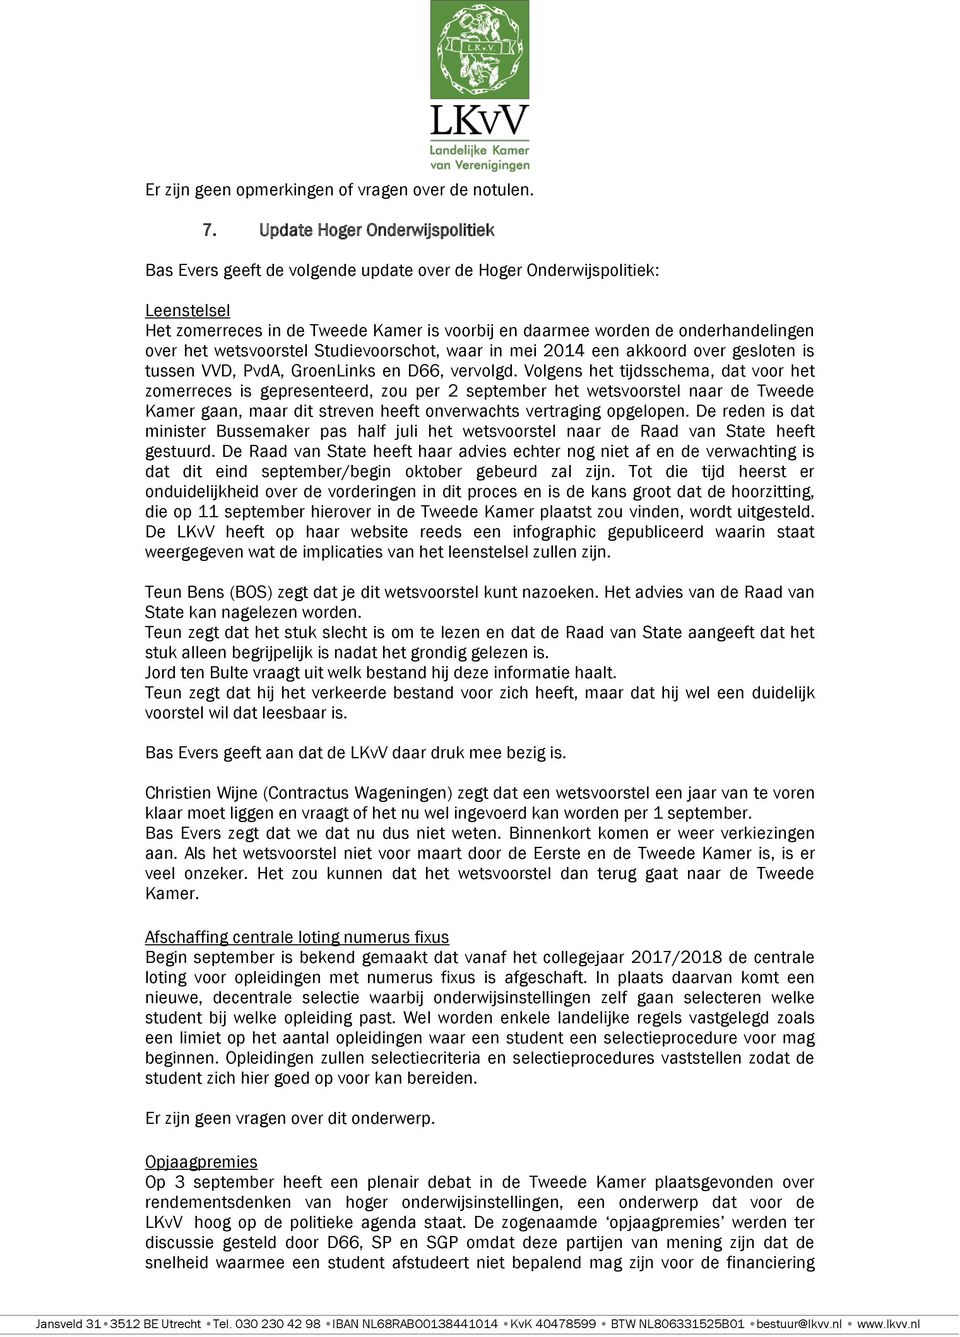 het wetsvoorstel Studievoorschot, waar in mei 2014 een akkoord over gesloten is tussen VVD, PvdA, GroenLinks en D66, vervolgd.